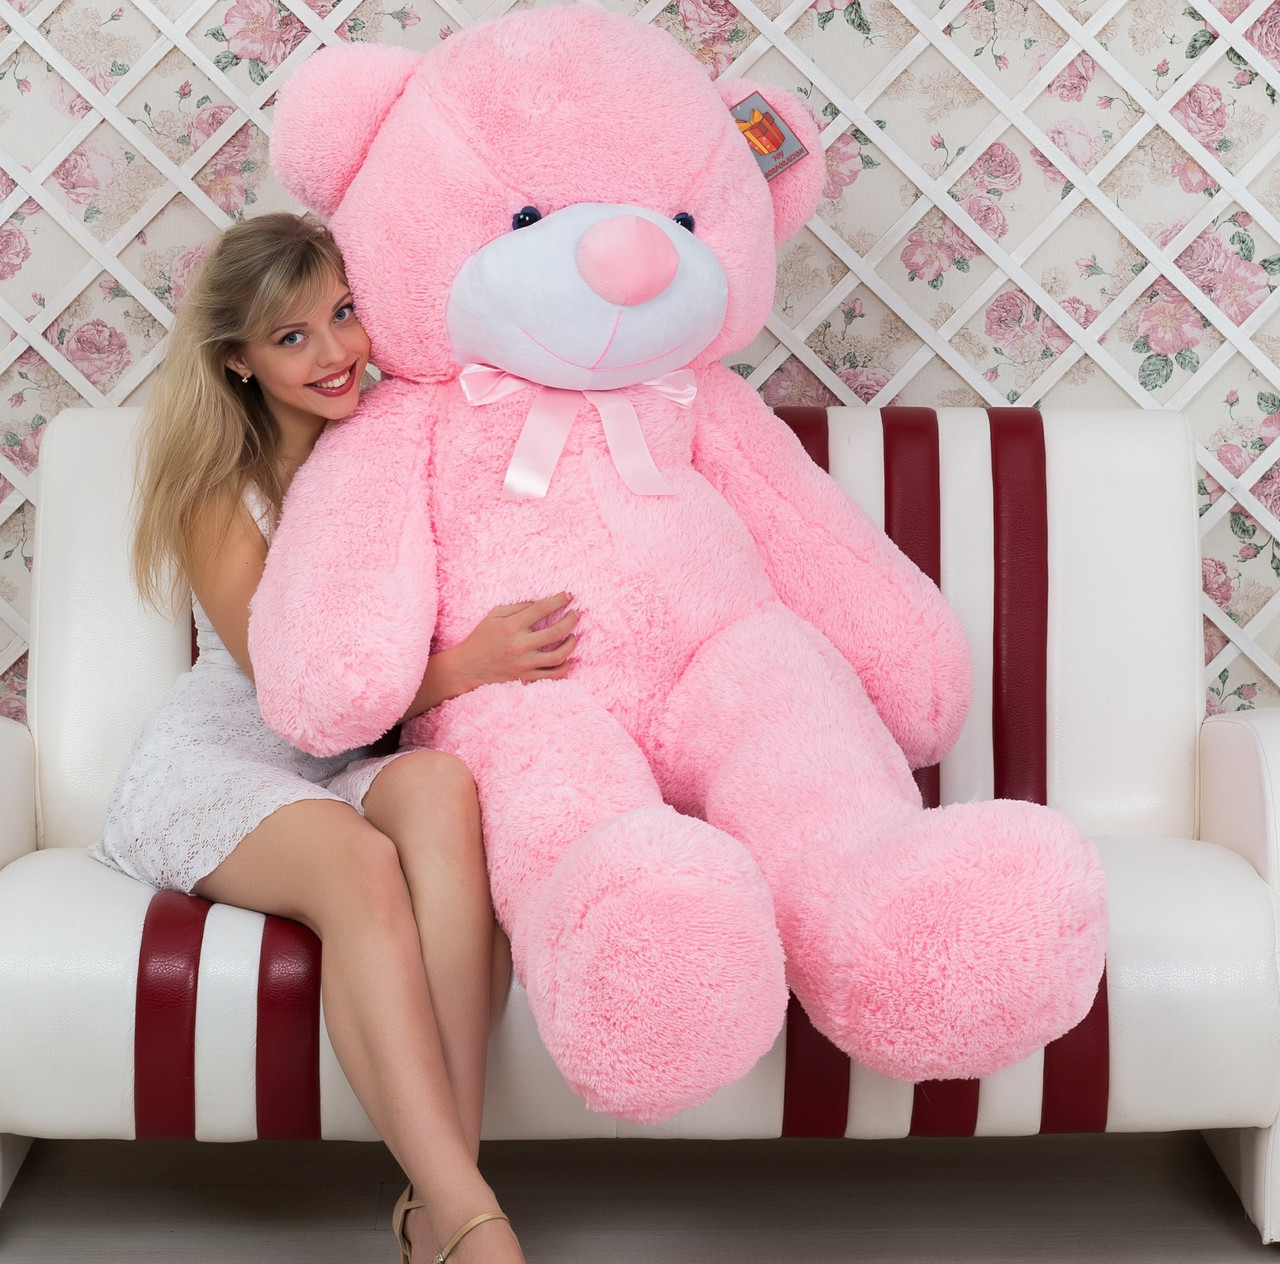 Плюшевий Мішка 2 метри рожевий в Подарурок. Великий Плюшевий Ведмідь 200 см, велика м'яка іграшка Плюшевий.